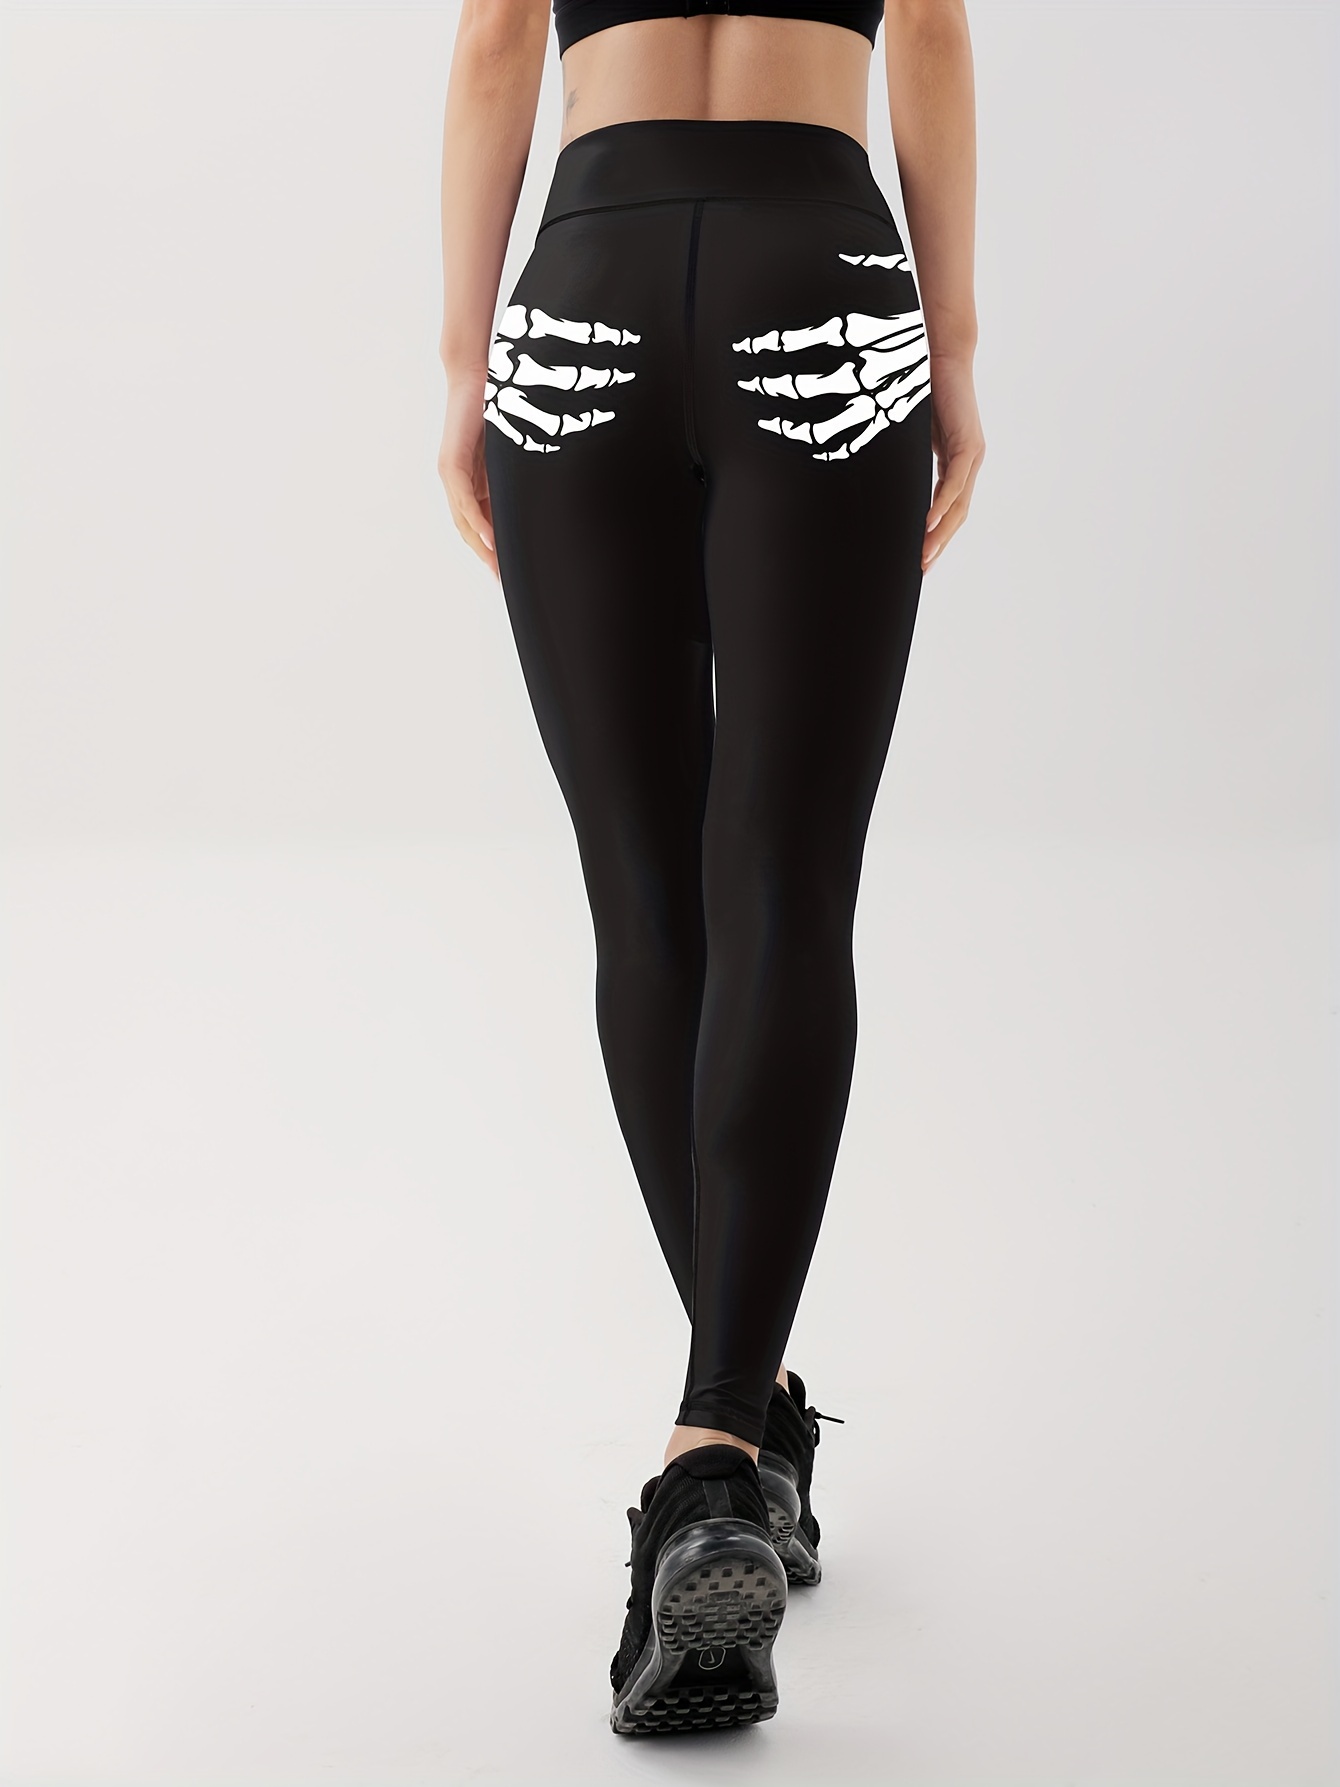 Skeleton Leggings –